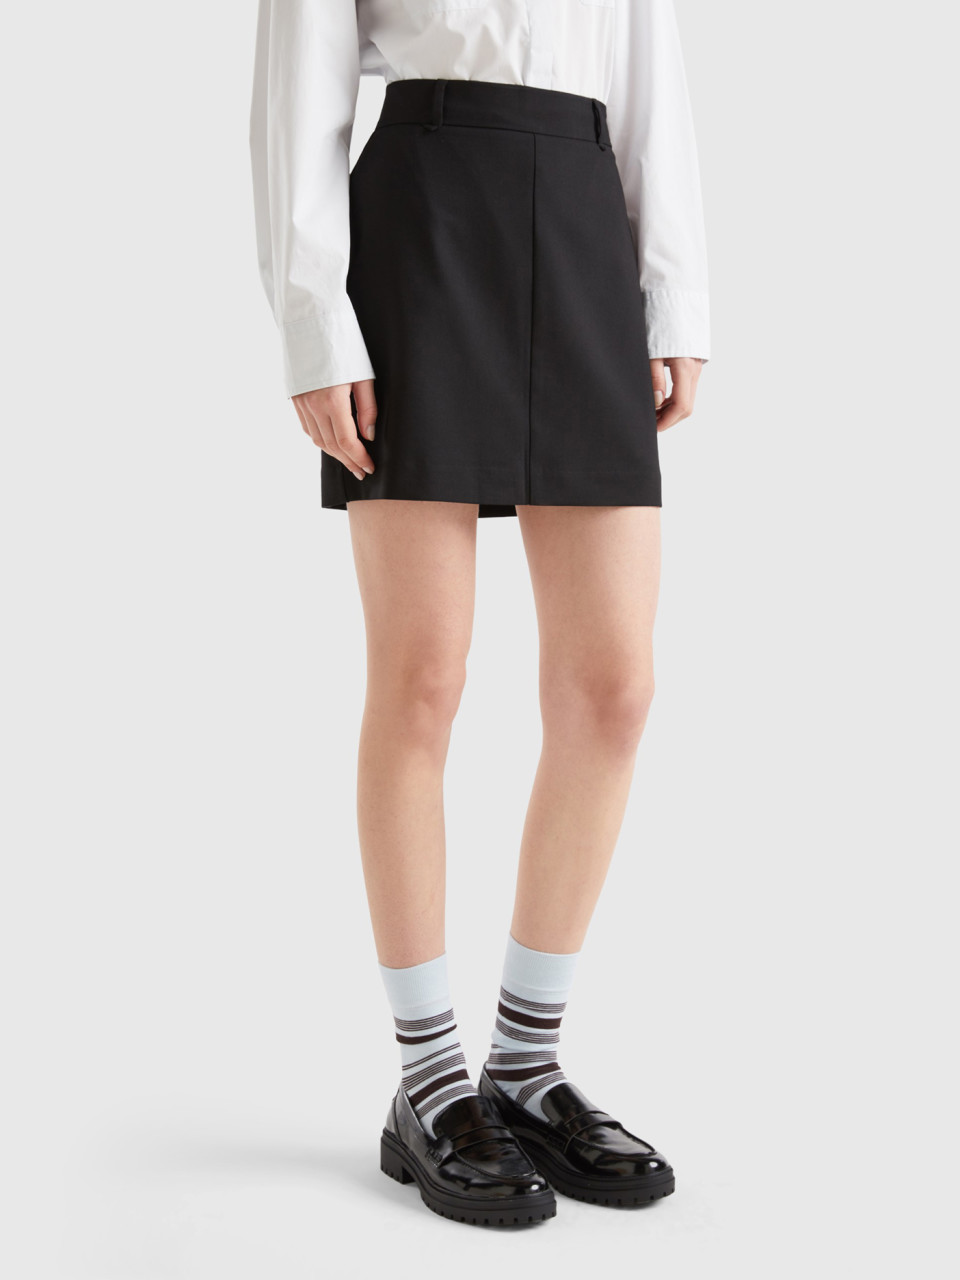 Benetton, Mini Skirt With Side Zipper, Black, Women